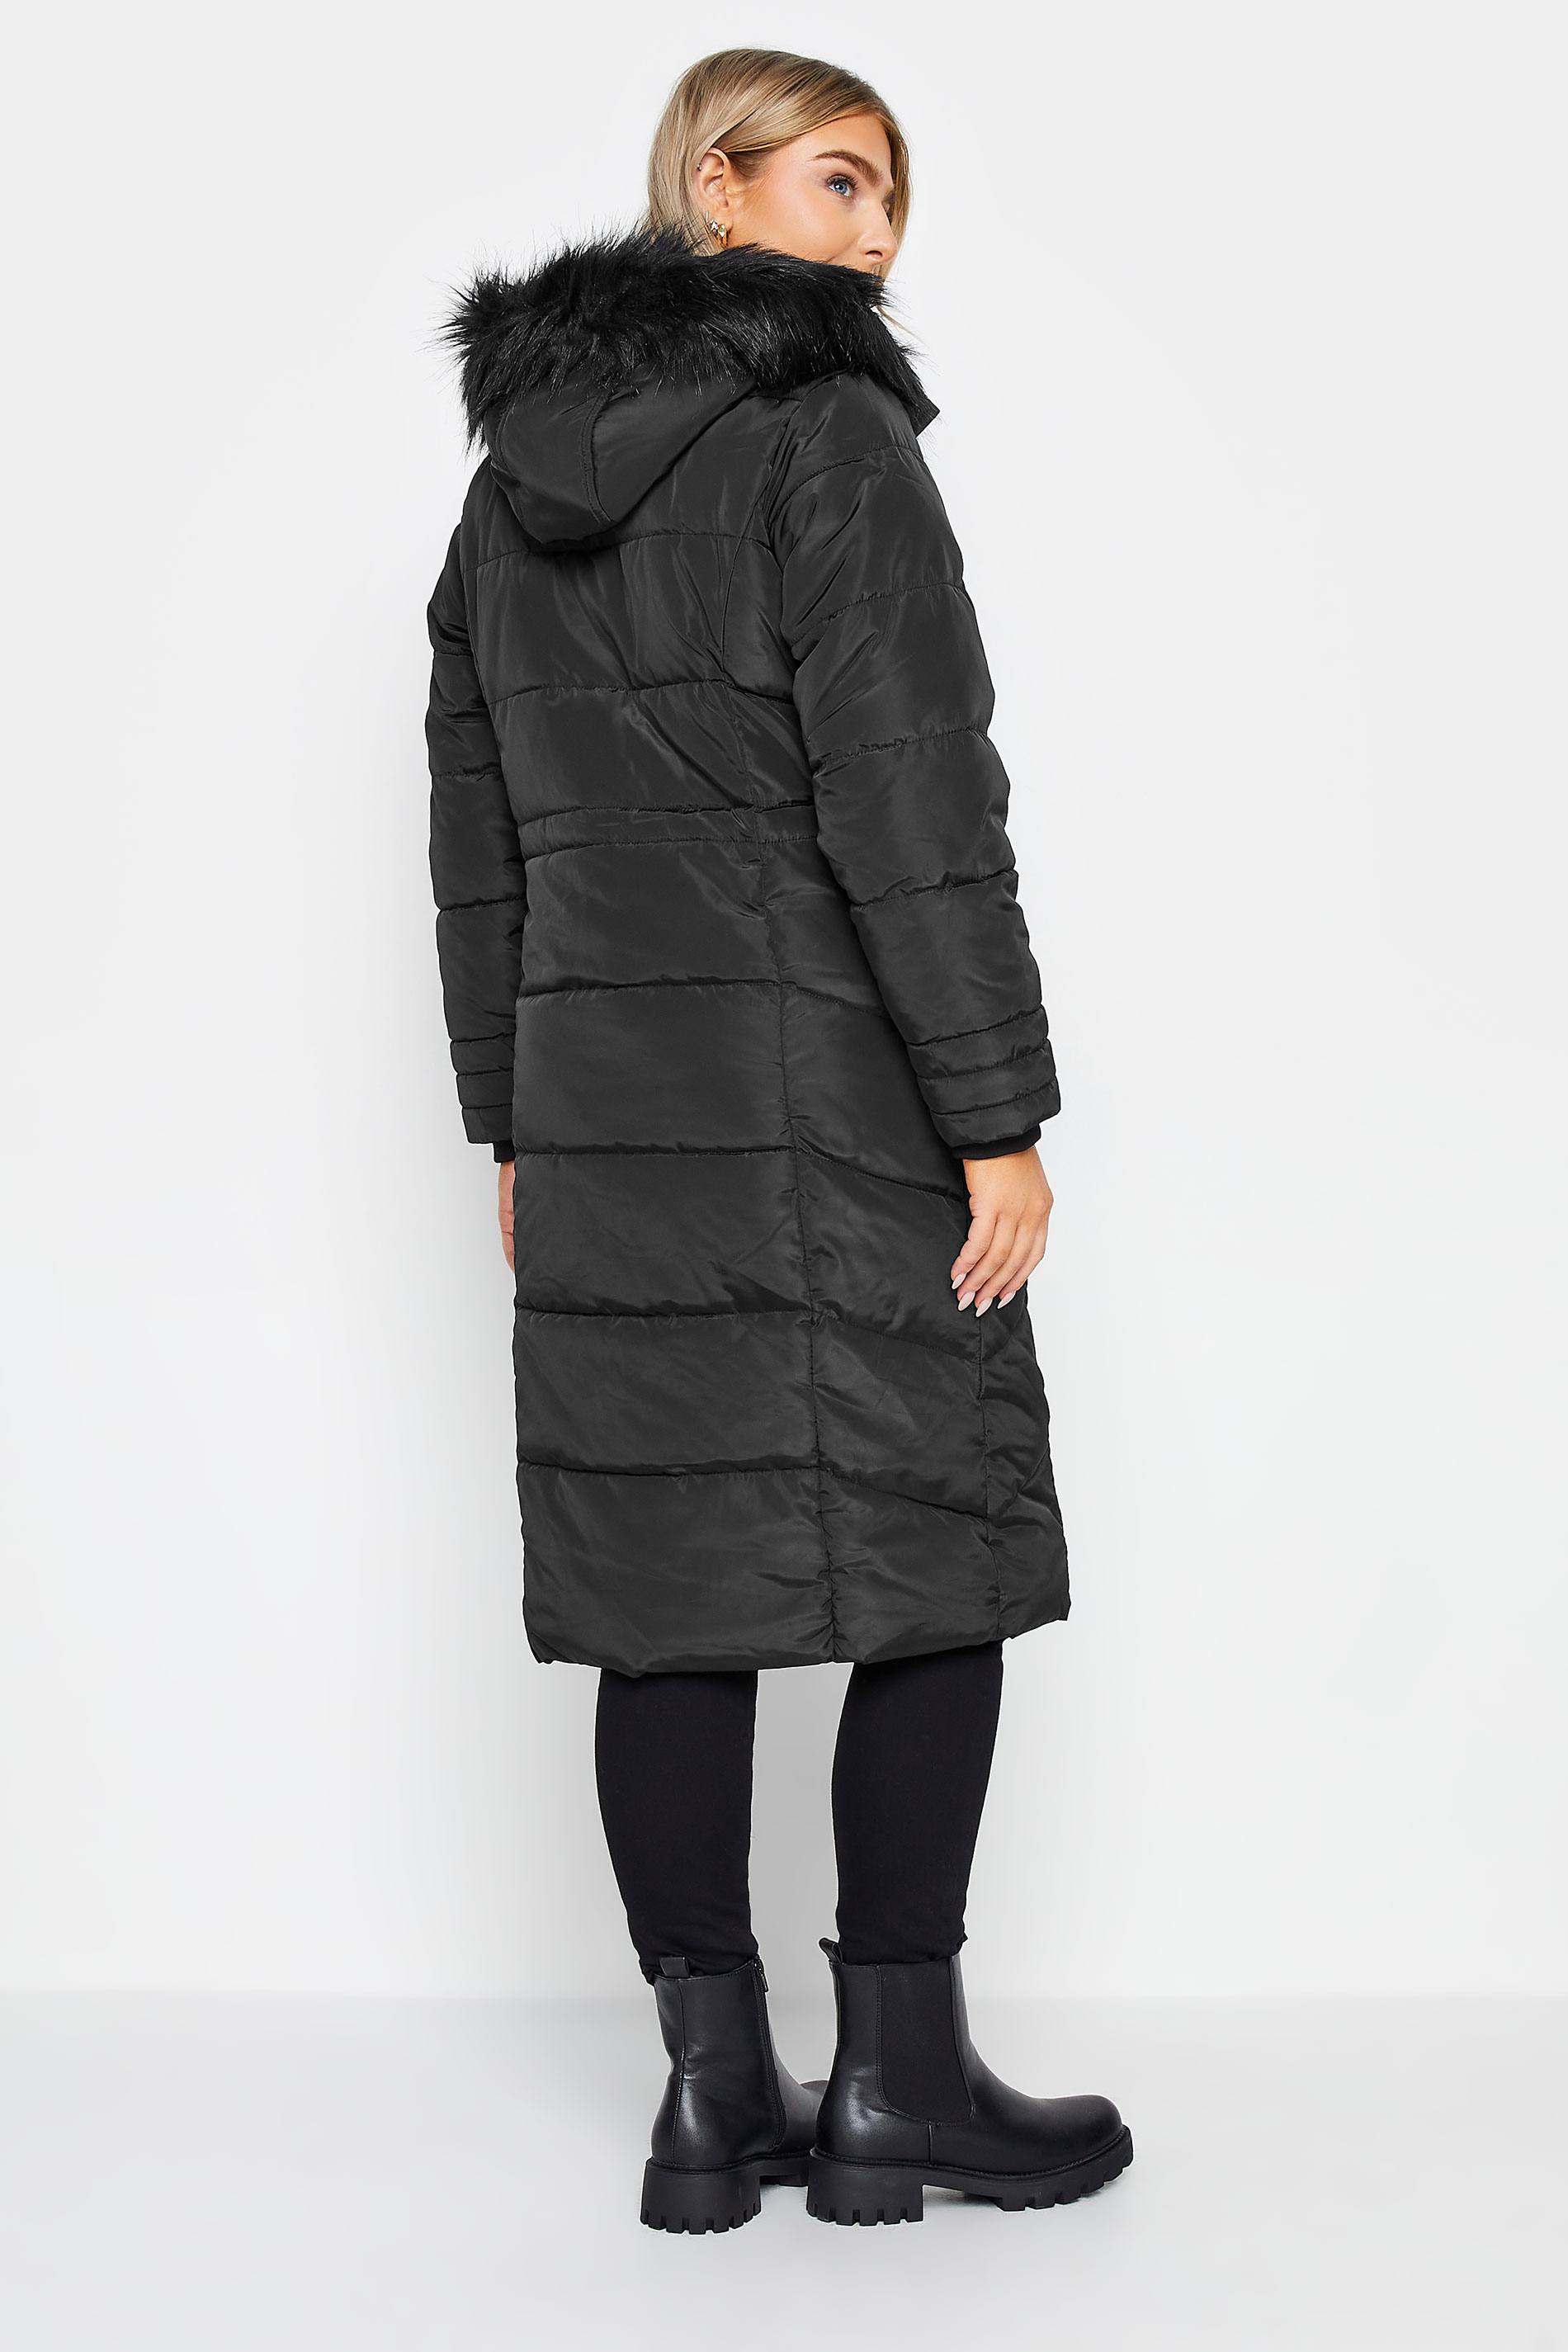 M&Co Black Faux Fur Trim Padded Coat | M&Co 3